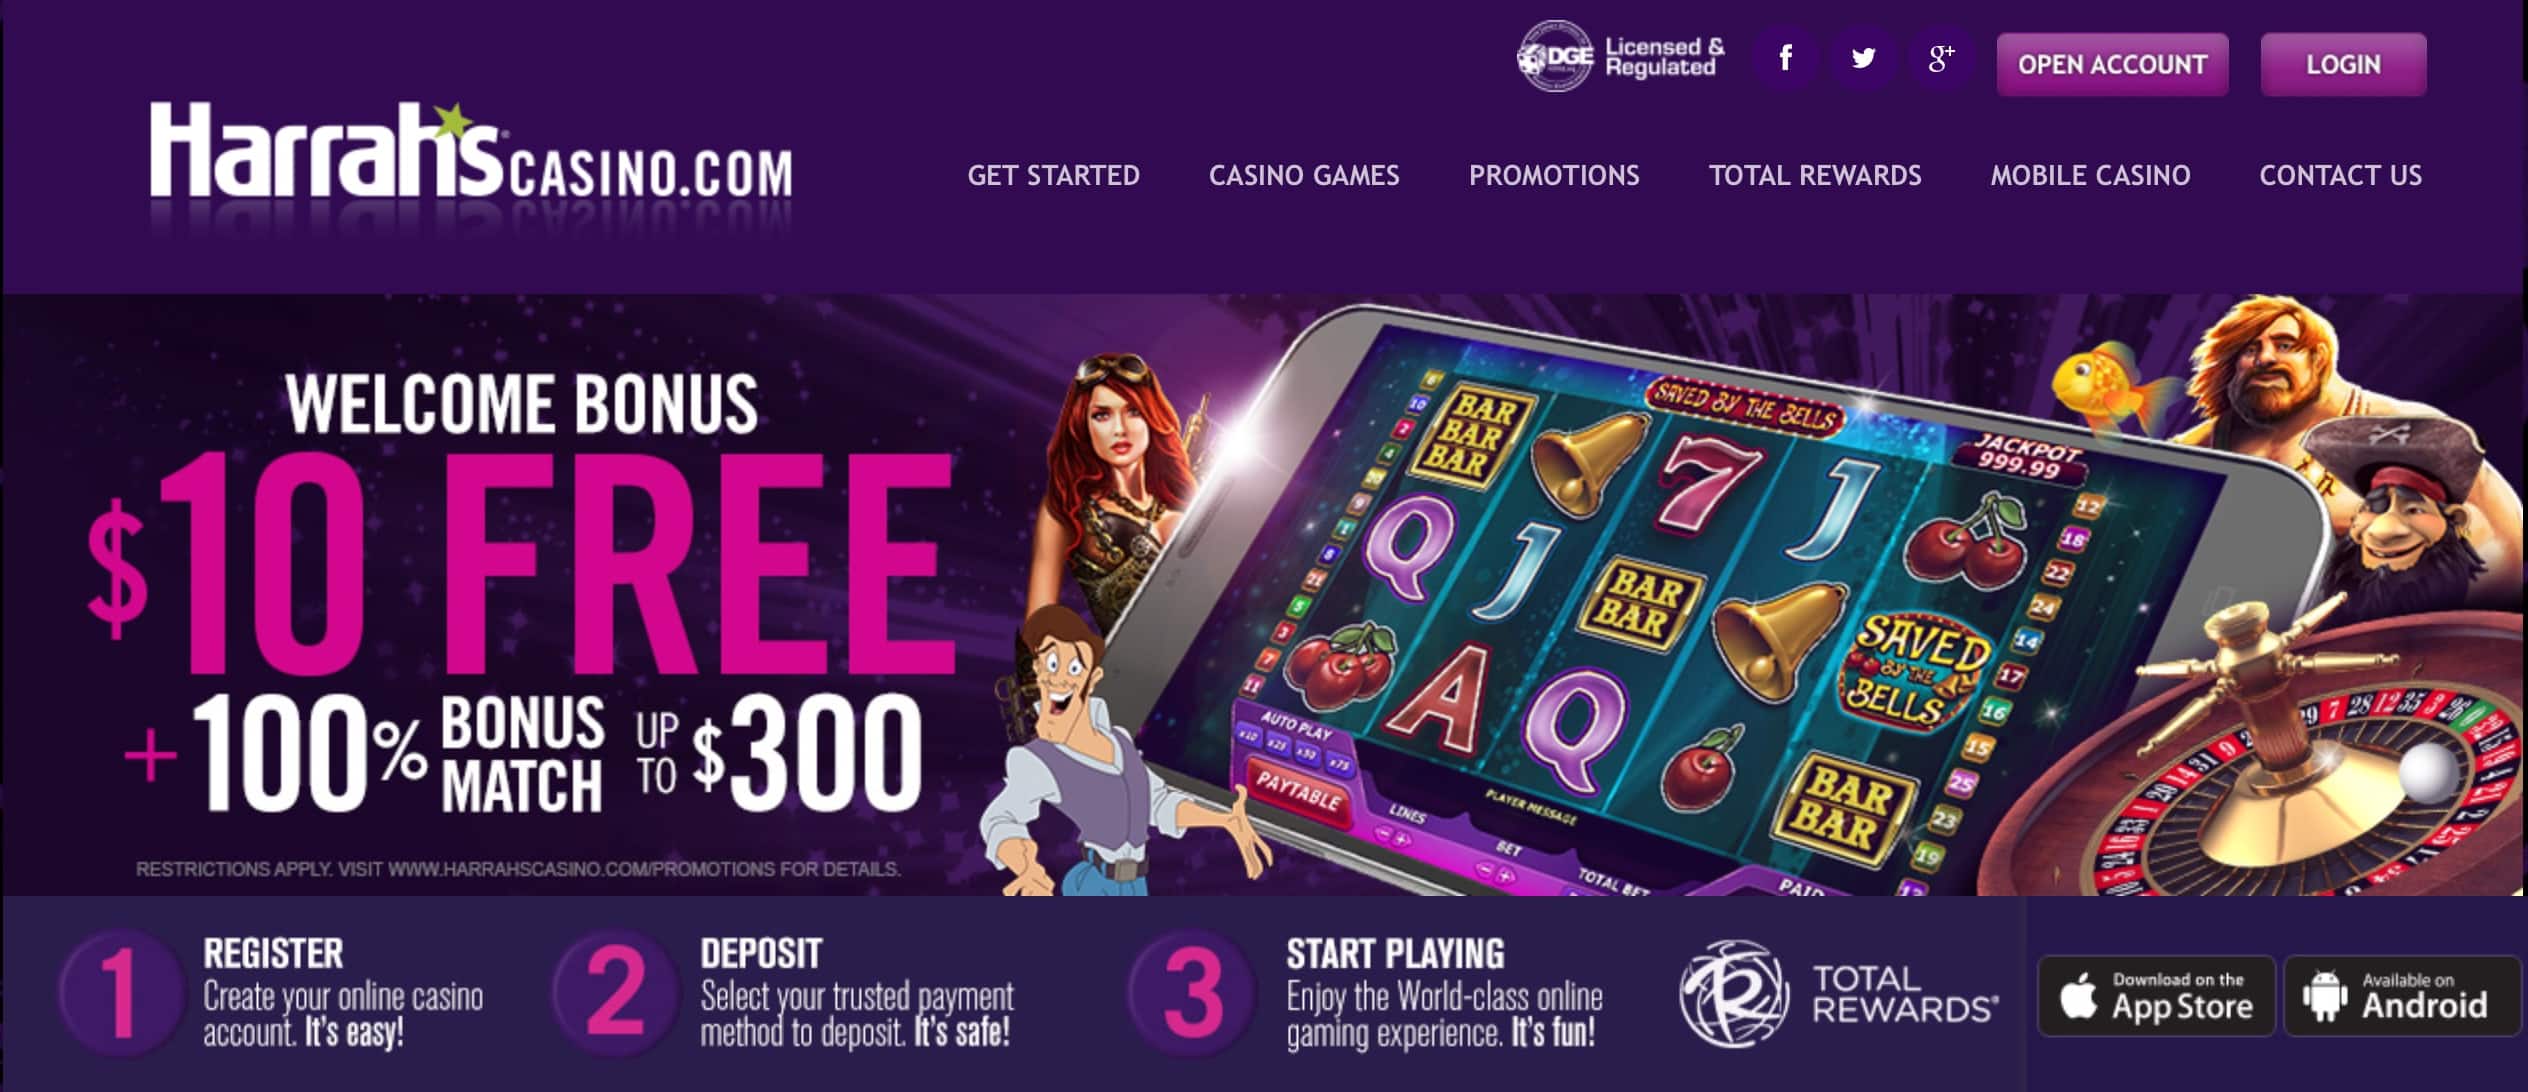 Free of charge online casinos gives players casino money comps to check their играть в игровые автоматы без регистрации в хорошем качестве